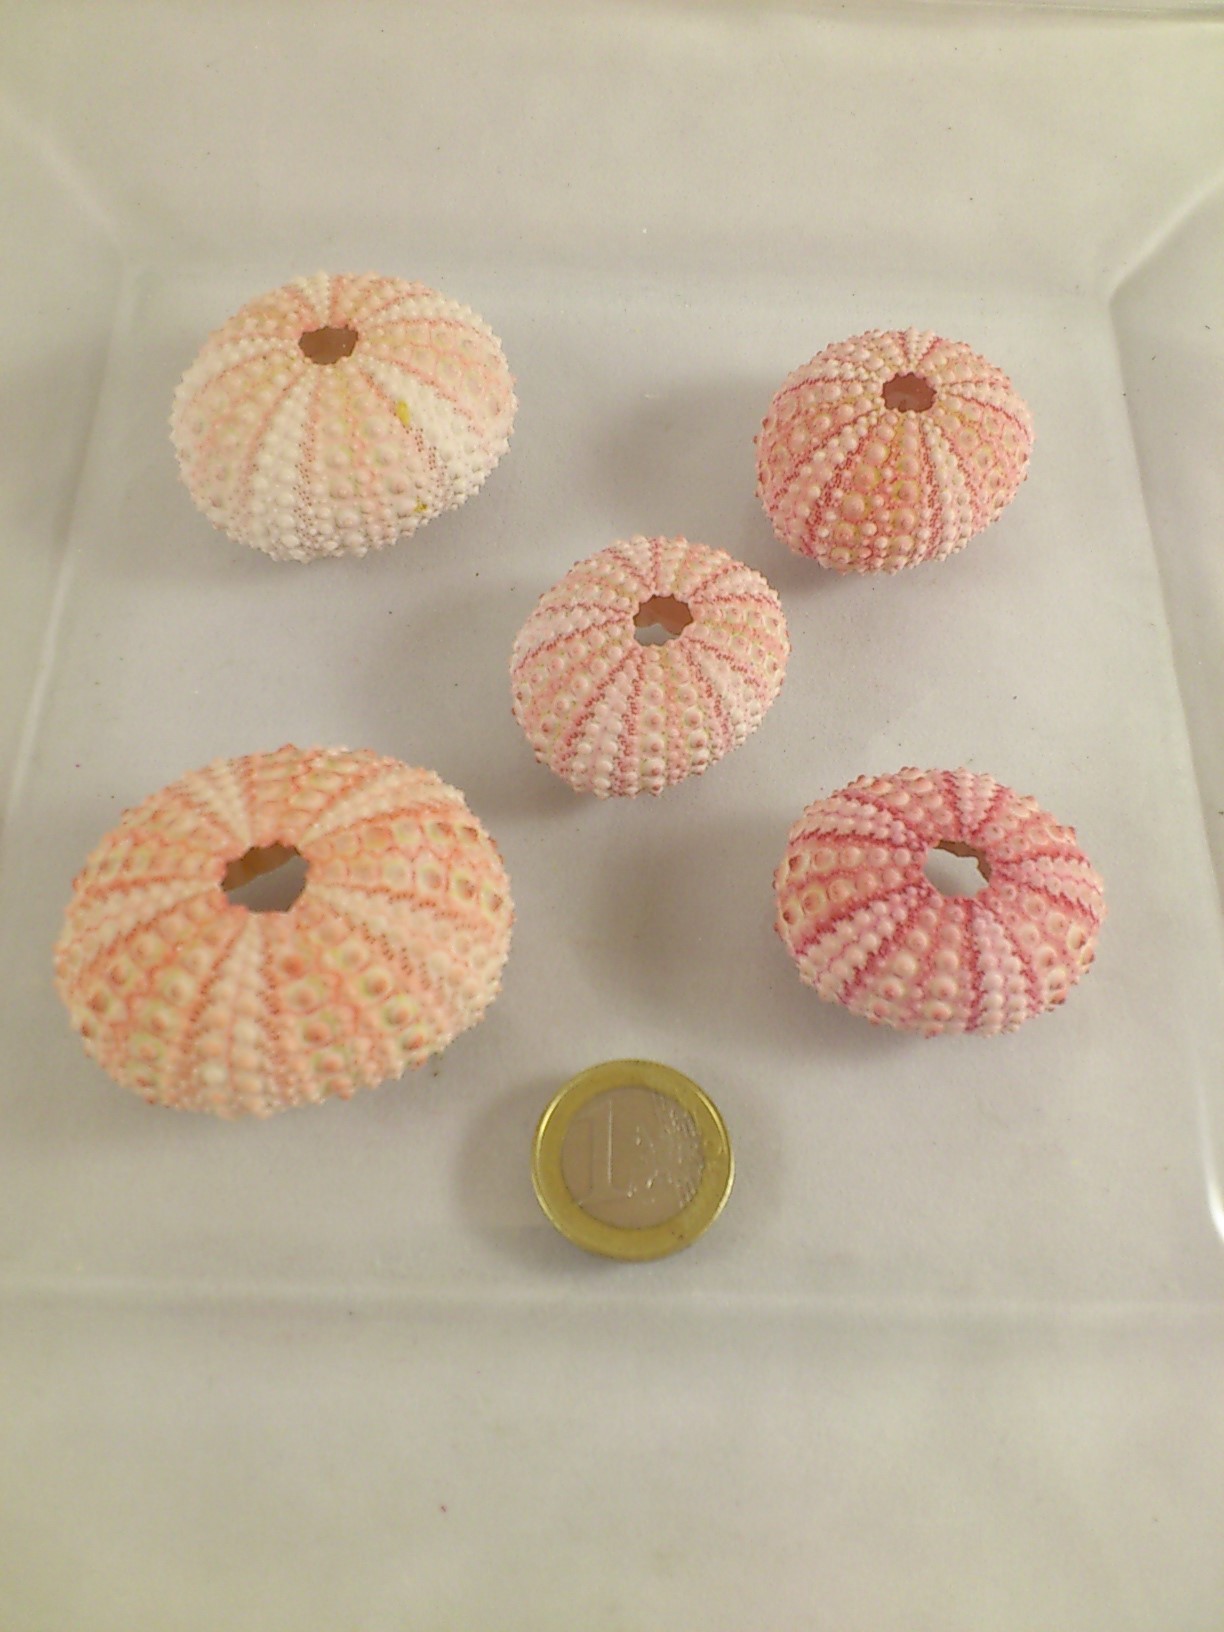 Zee egel (Sea urchin pink) 5 st.